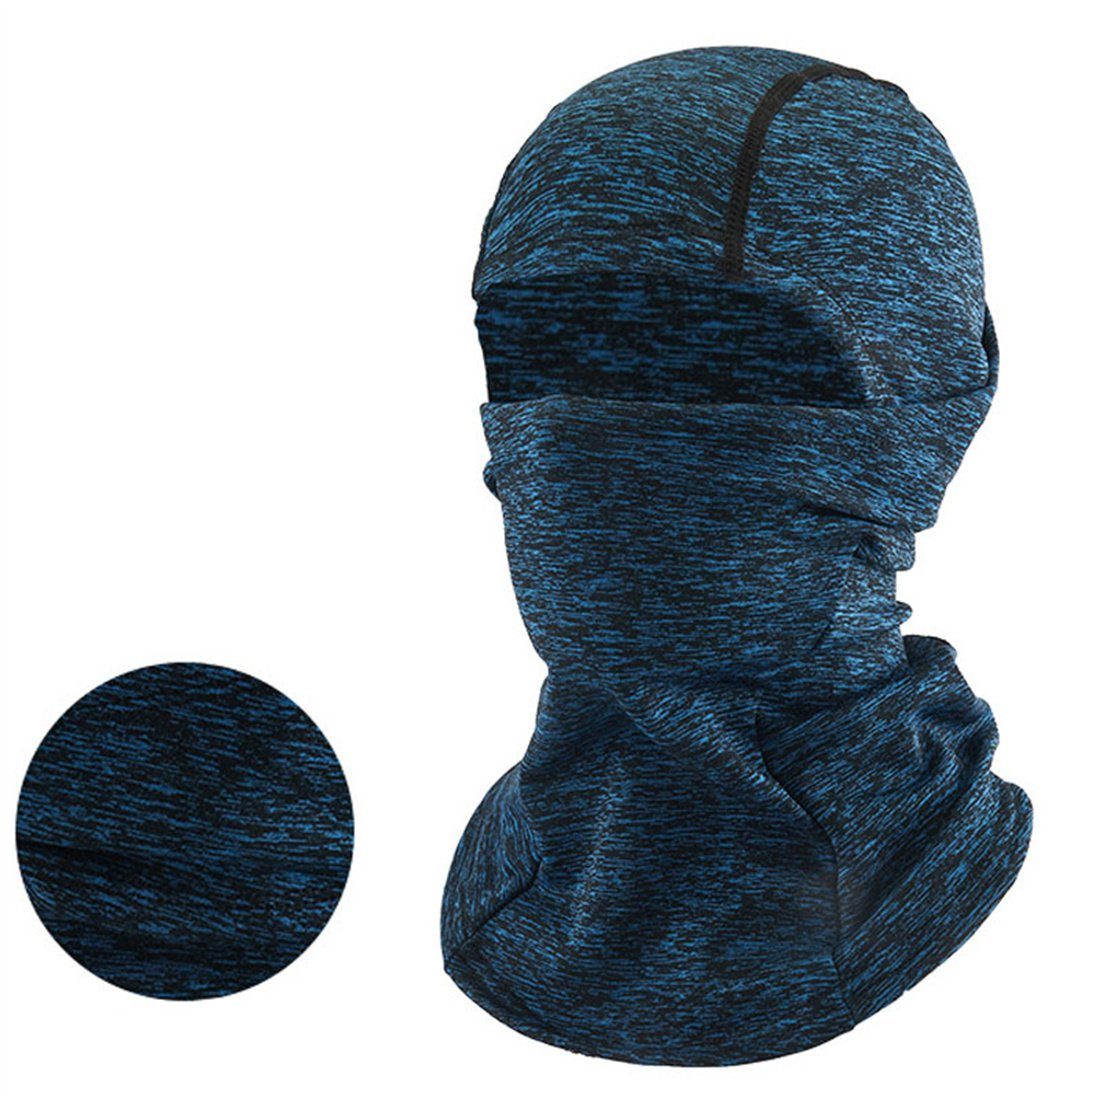 unisex Radfahren Ski Maske, Sturmhaube Winter Kopfbedeckung, warme kalte DÖRÖY blau